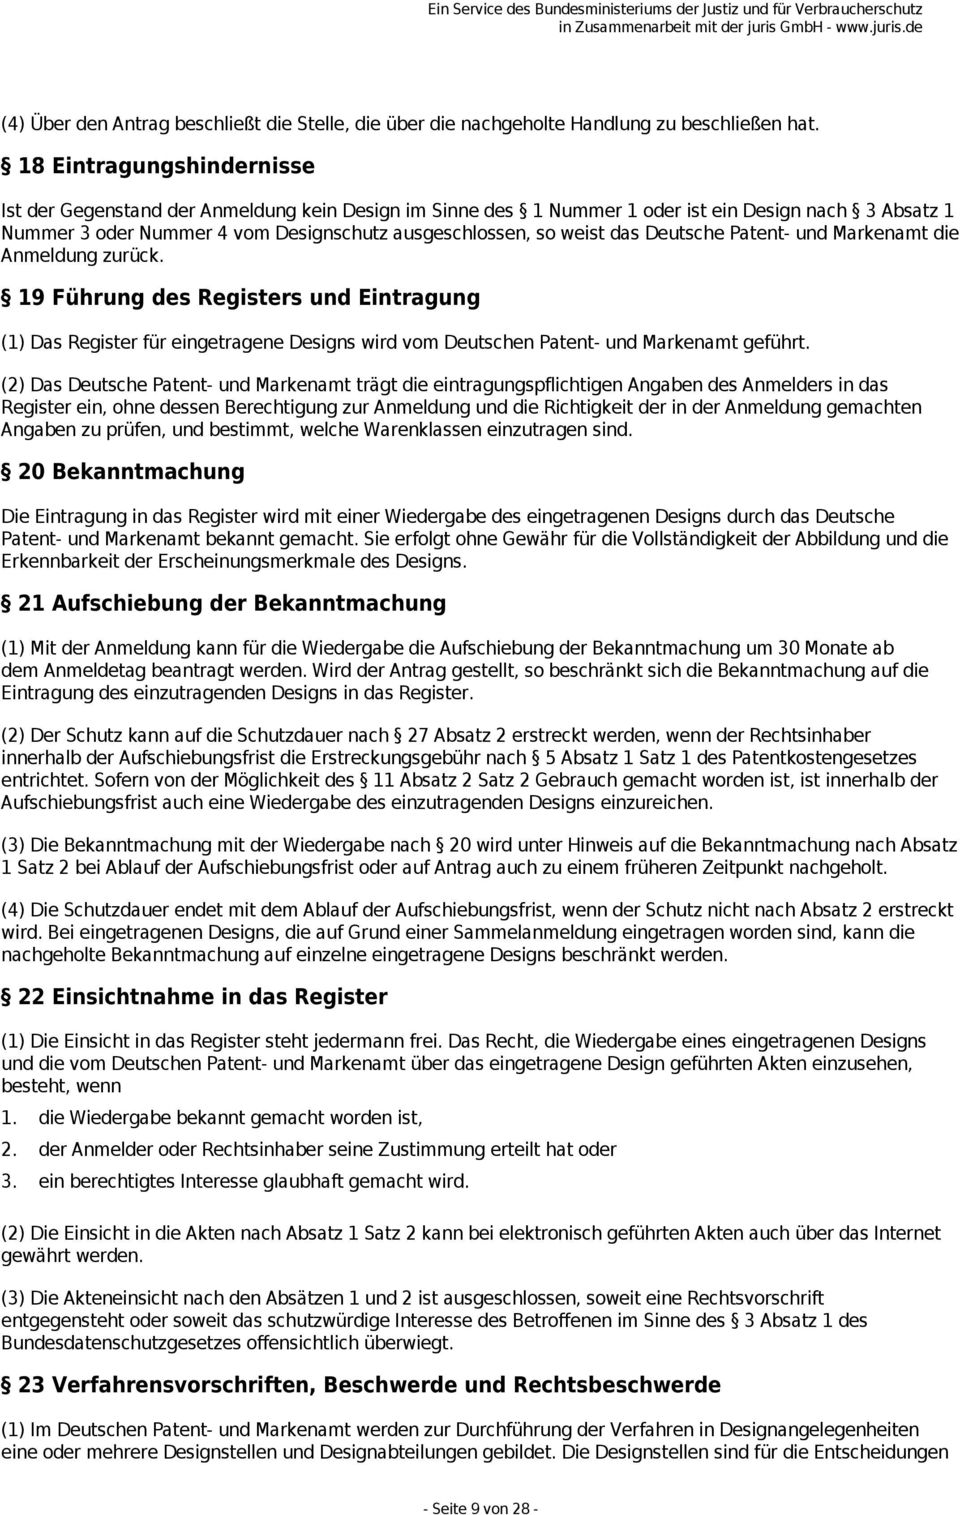 Deutsche Patent- und Markenamt die Anmeldung zurück. 19 Führung des Registers und Eintragung (1) Das Register für eingetragene Designs wird vom Deutschen Patent- und Markenamt geführt.